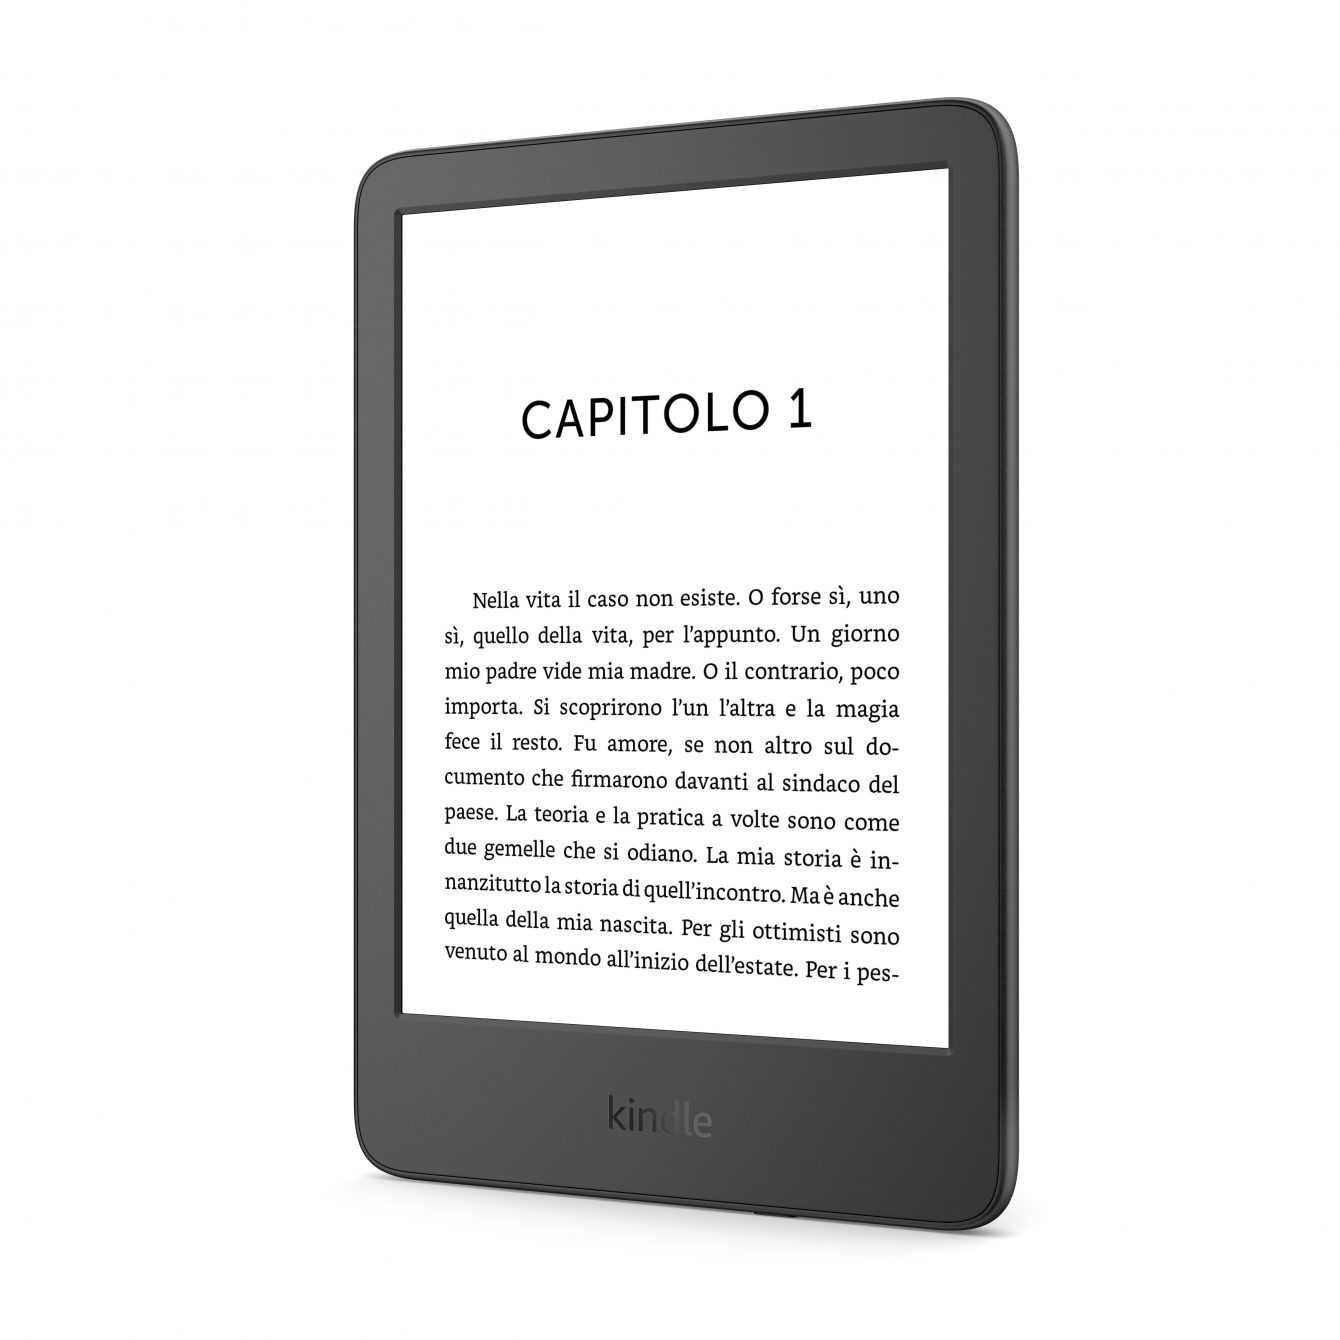 Amazon: presented the new Kindle